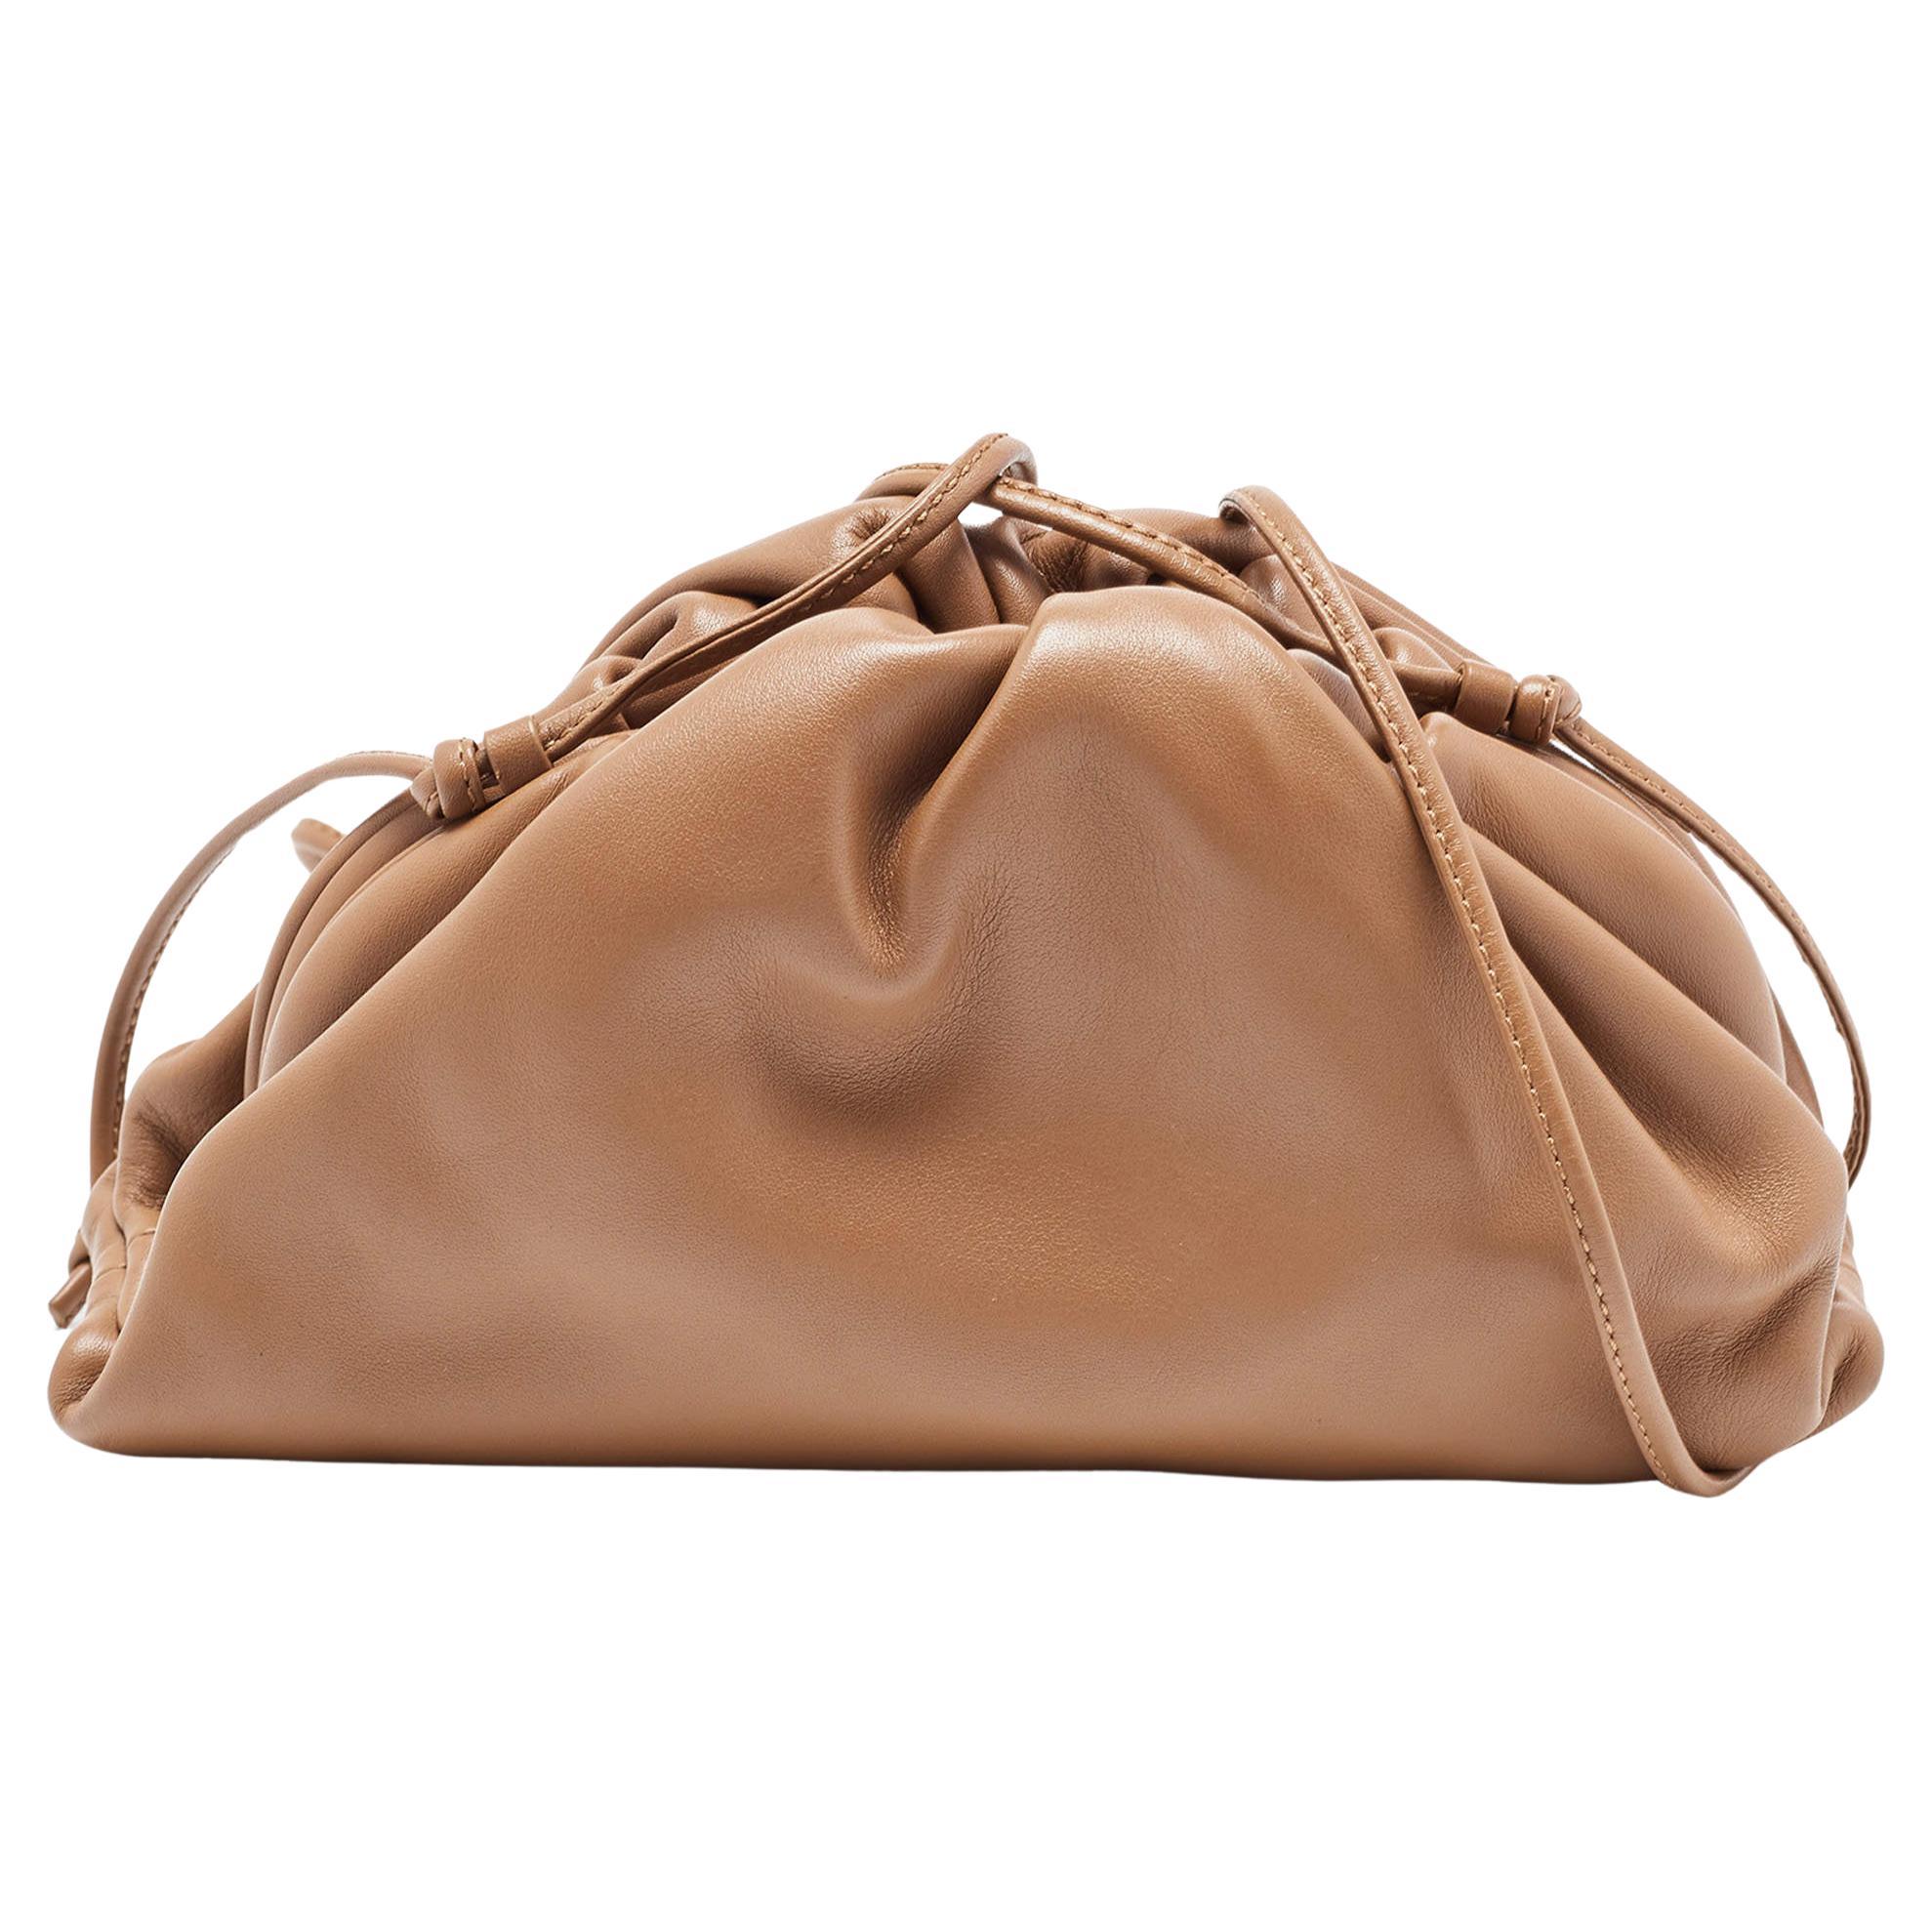 Bottega Veneta - Mini sac à main The Pouch en cuir marron